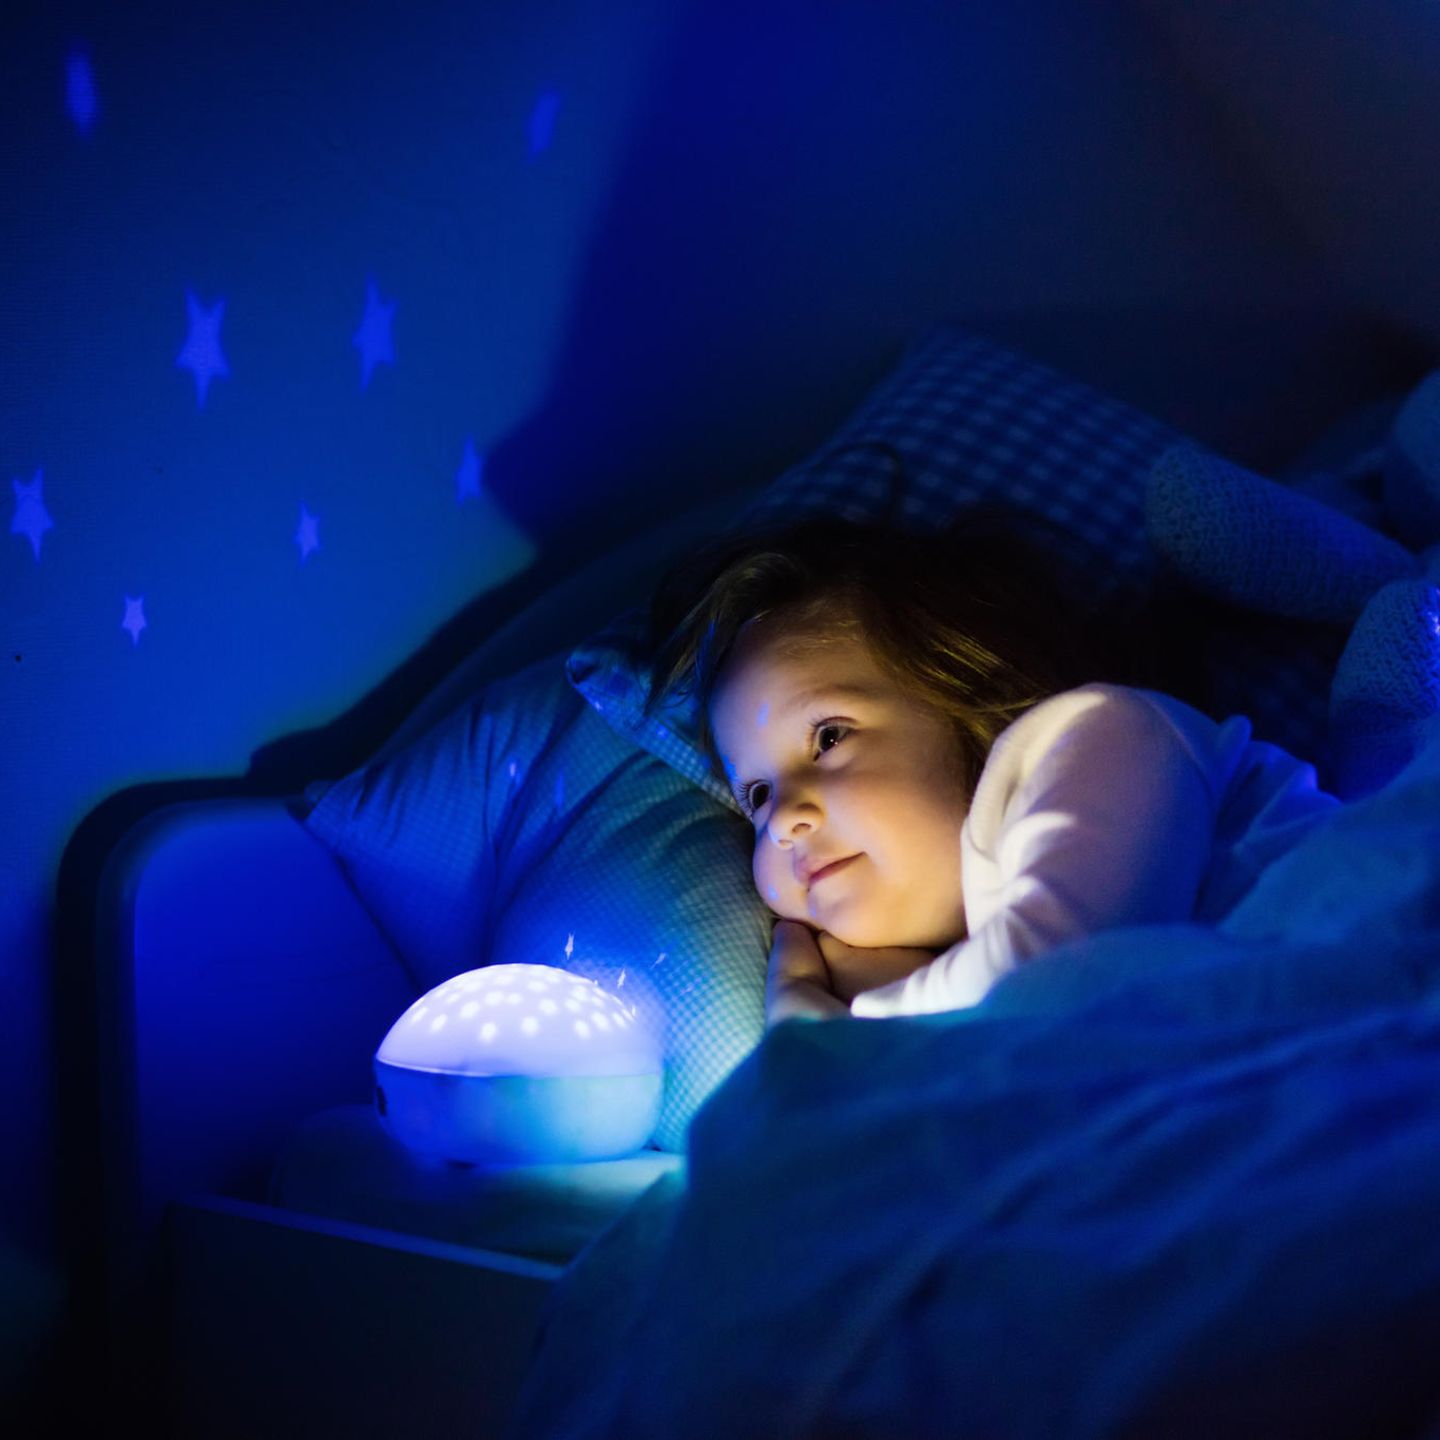 Nachtlicht für Kinder: 7 Ideen gegen die Angst vor Dunkelheit